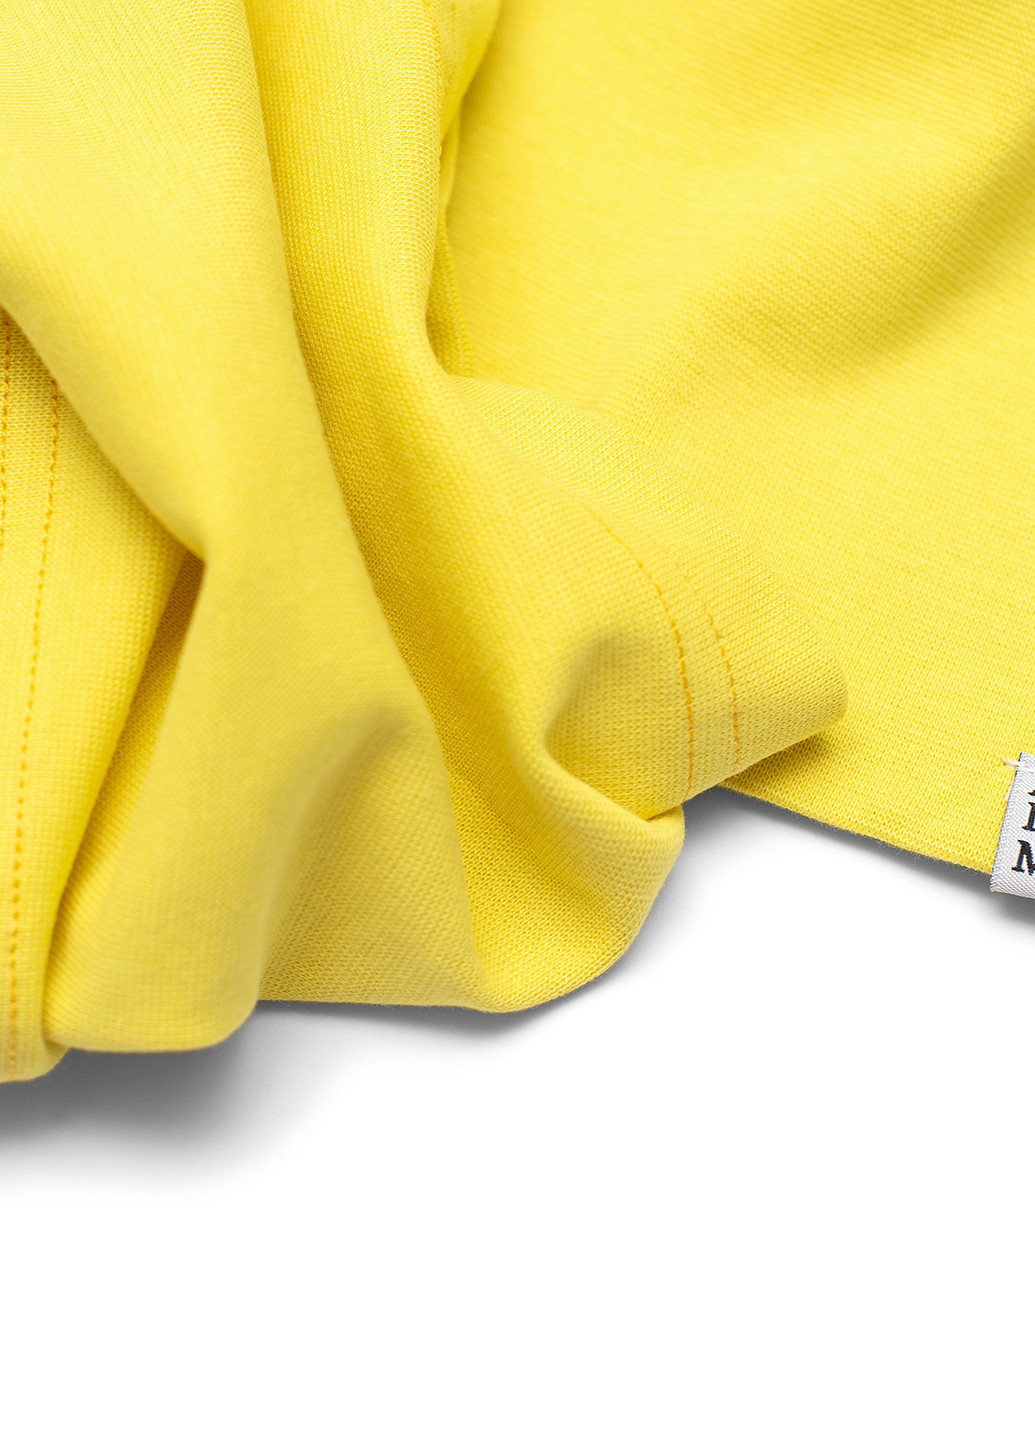 Желтый демисезонный комплект (шапка, шарф-снуд) ArDoMi